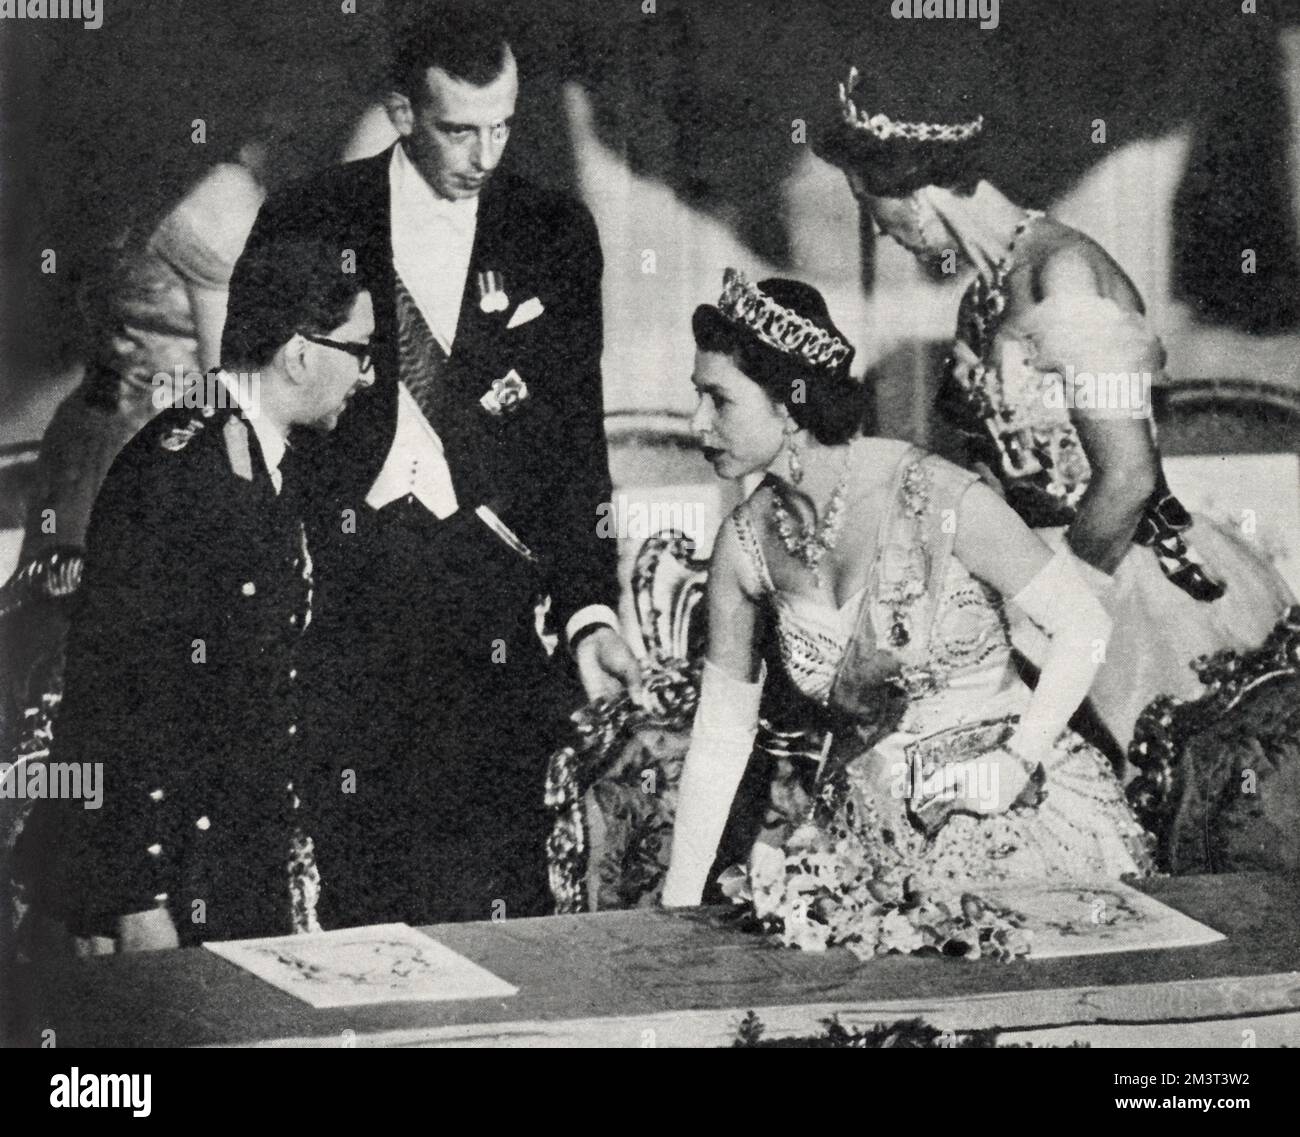 La reine Elizabeth II prend son siège dans la boîte royale de l'Opéra royal aux côtés du roi Mahendra du Népal pour une représentation de gala de la Sonnambula de Bellini. Derrière eux se trouvent Marina, Dowager Duchesse de Kent, et son fils, le duc de Kent. Banque D'Images